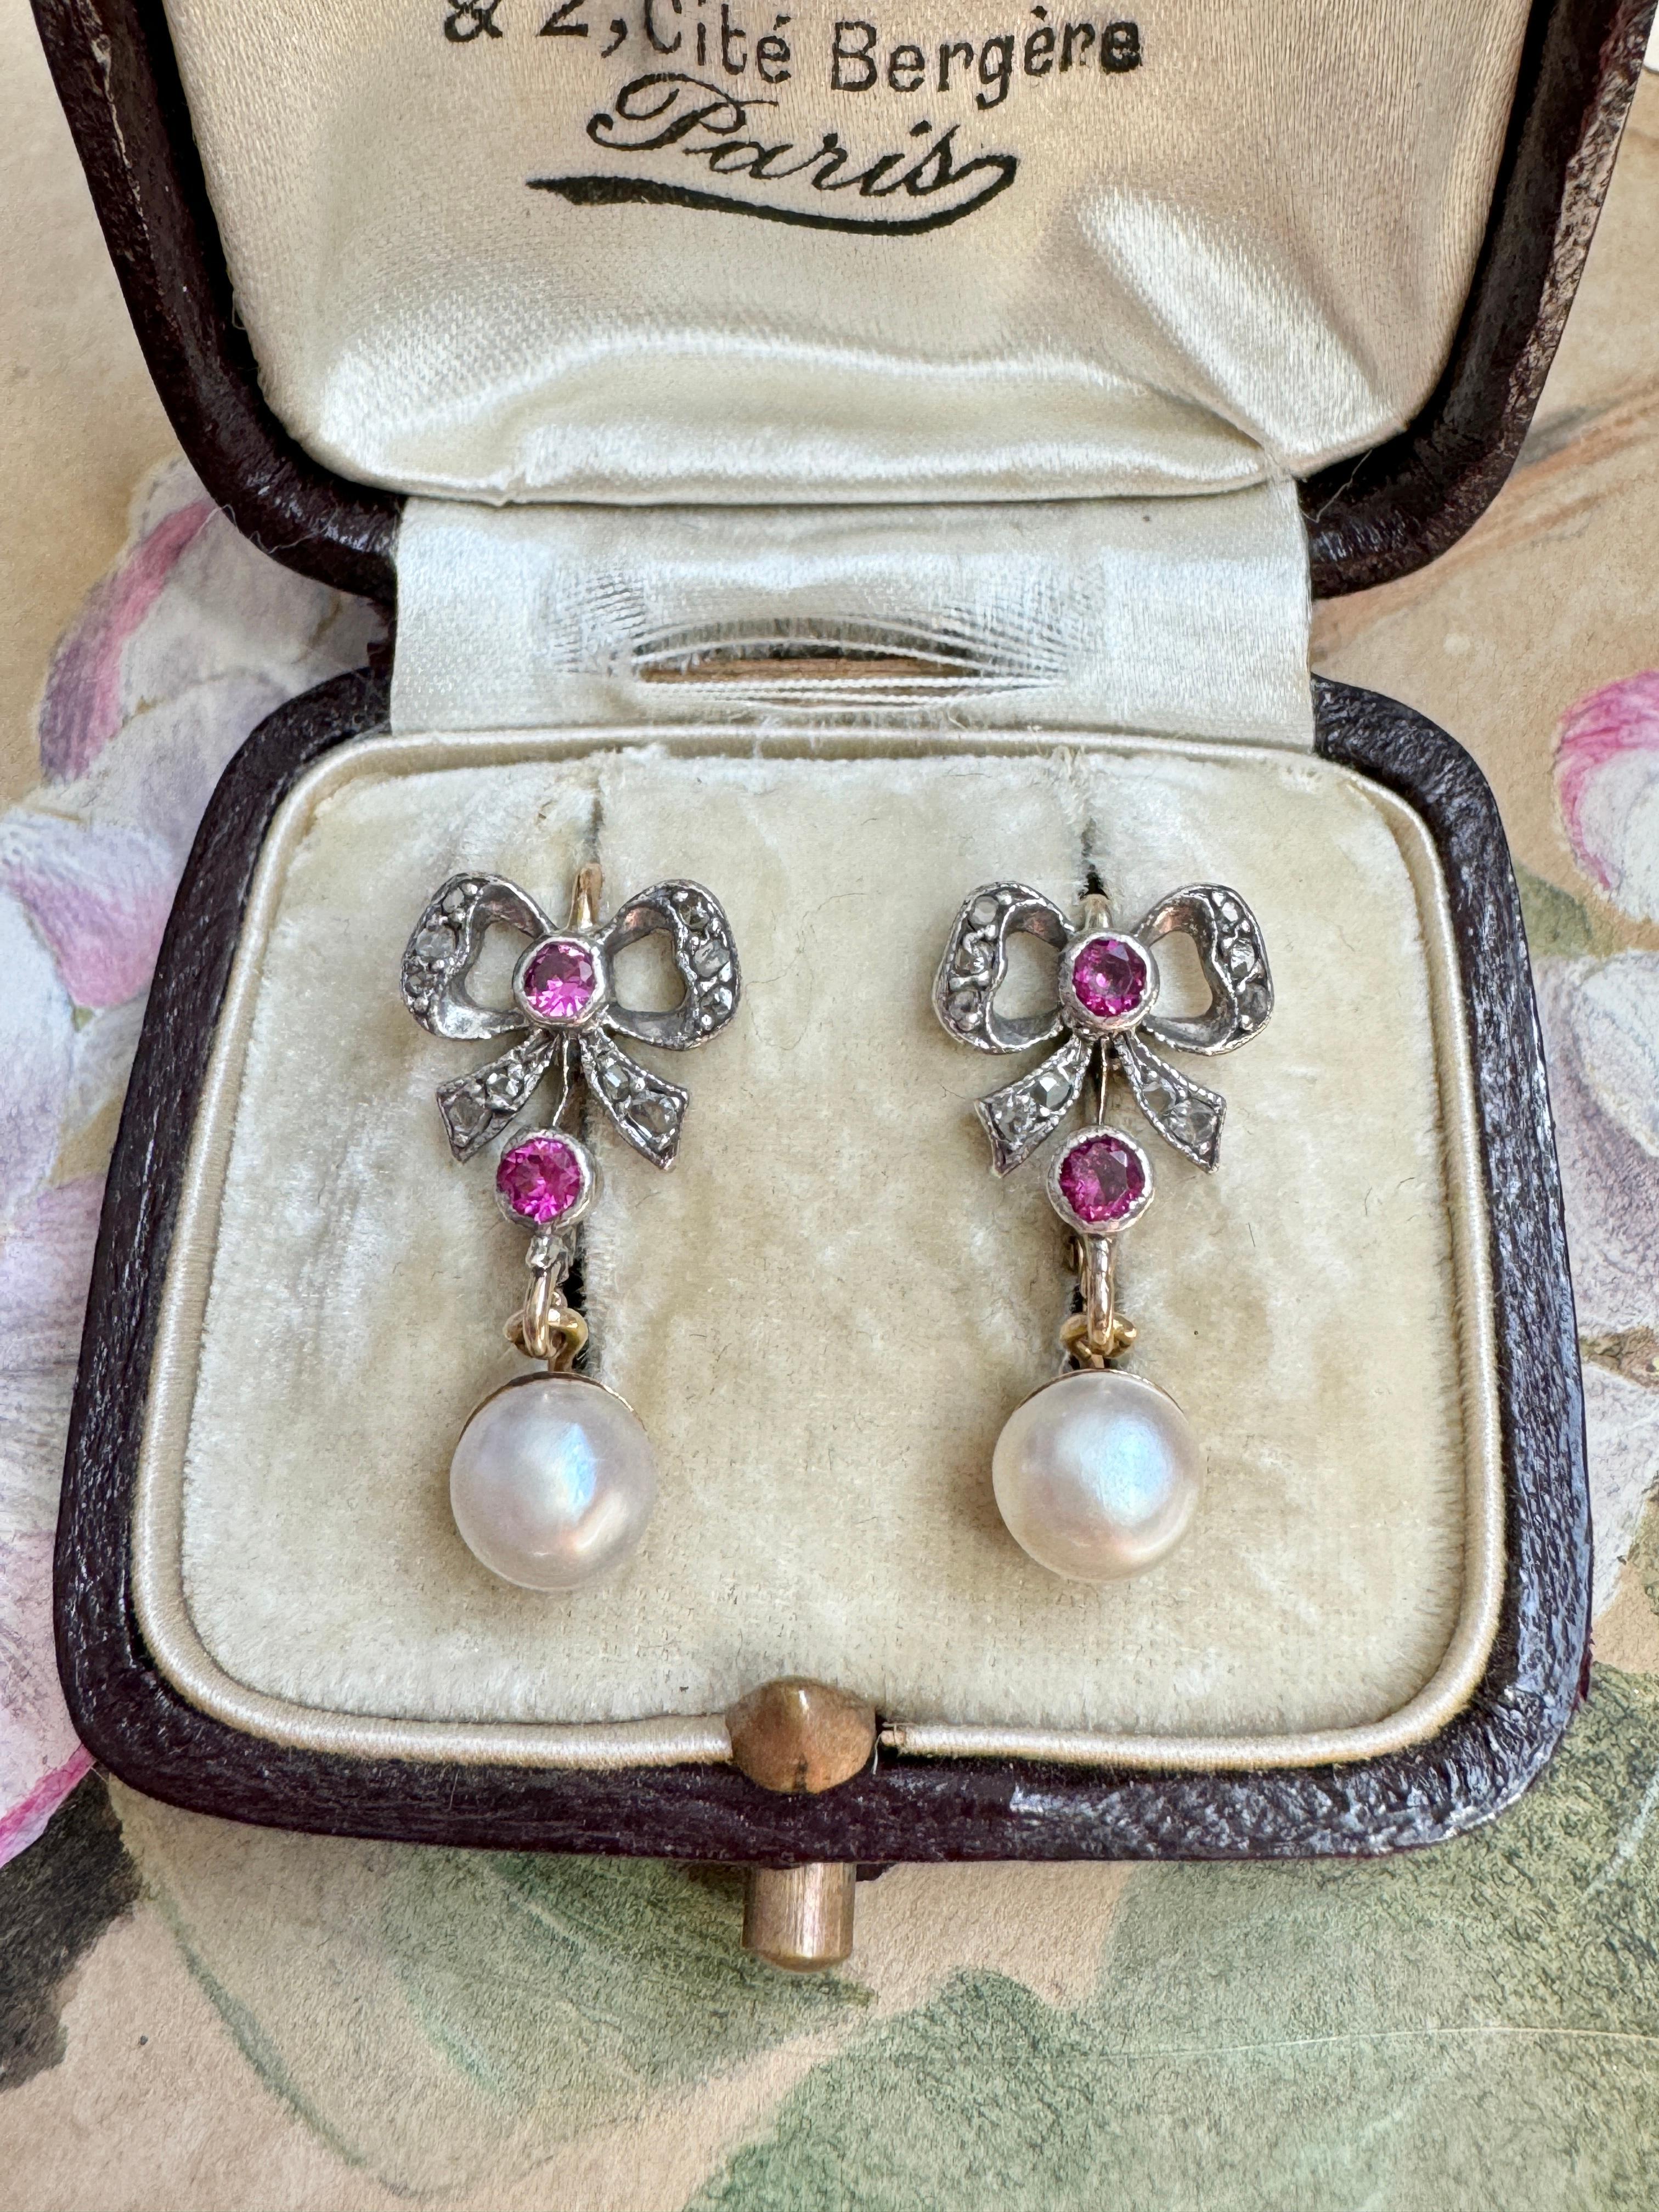 Diese süßen edwardianischen Ohrringe bestehen aus fließenden, mit Diamanten im Rosenschliff besetzten Bändern, die mit leuchtenden synthetischen Rubinen akzentuiert sind und an denen glänzende Perlen hängen. Gefertigt in Silber mit